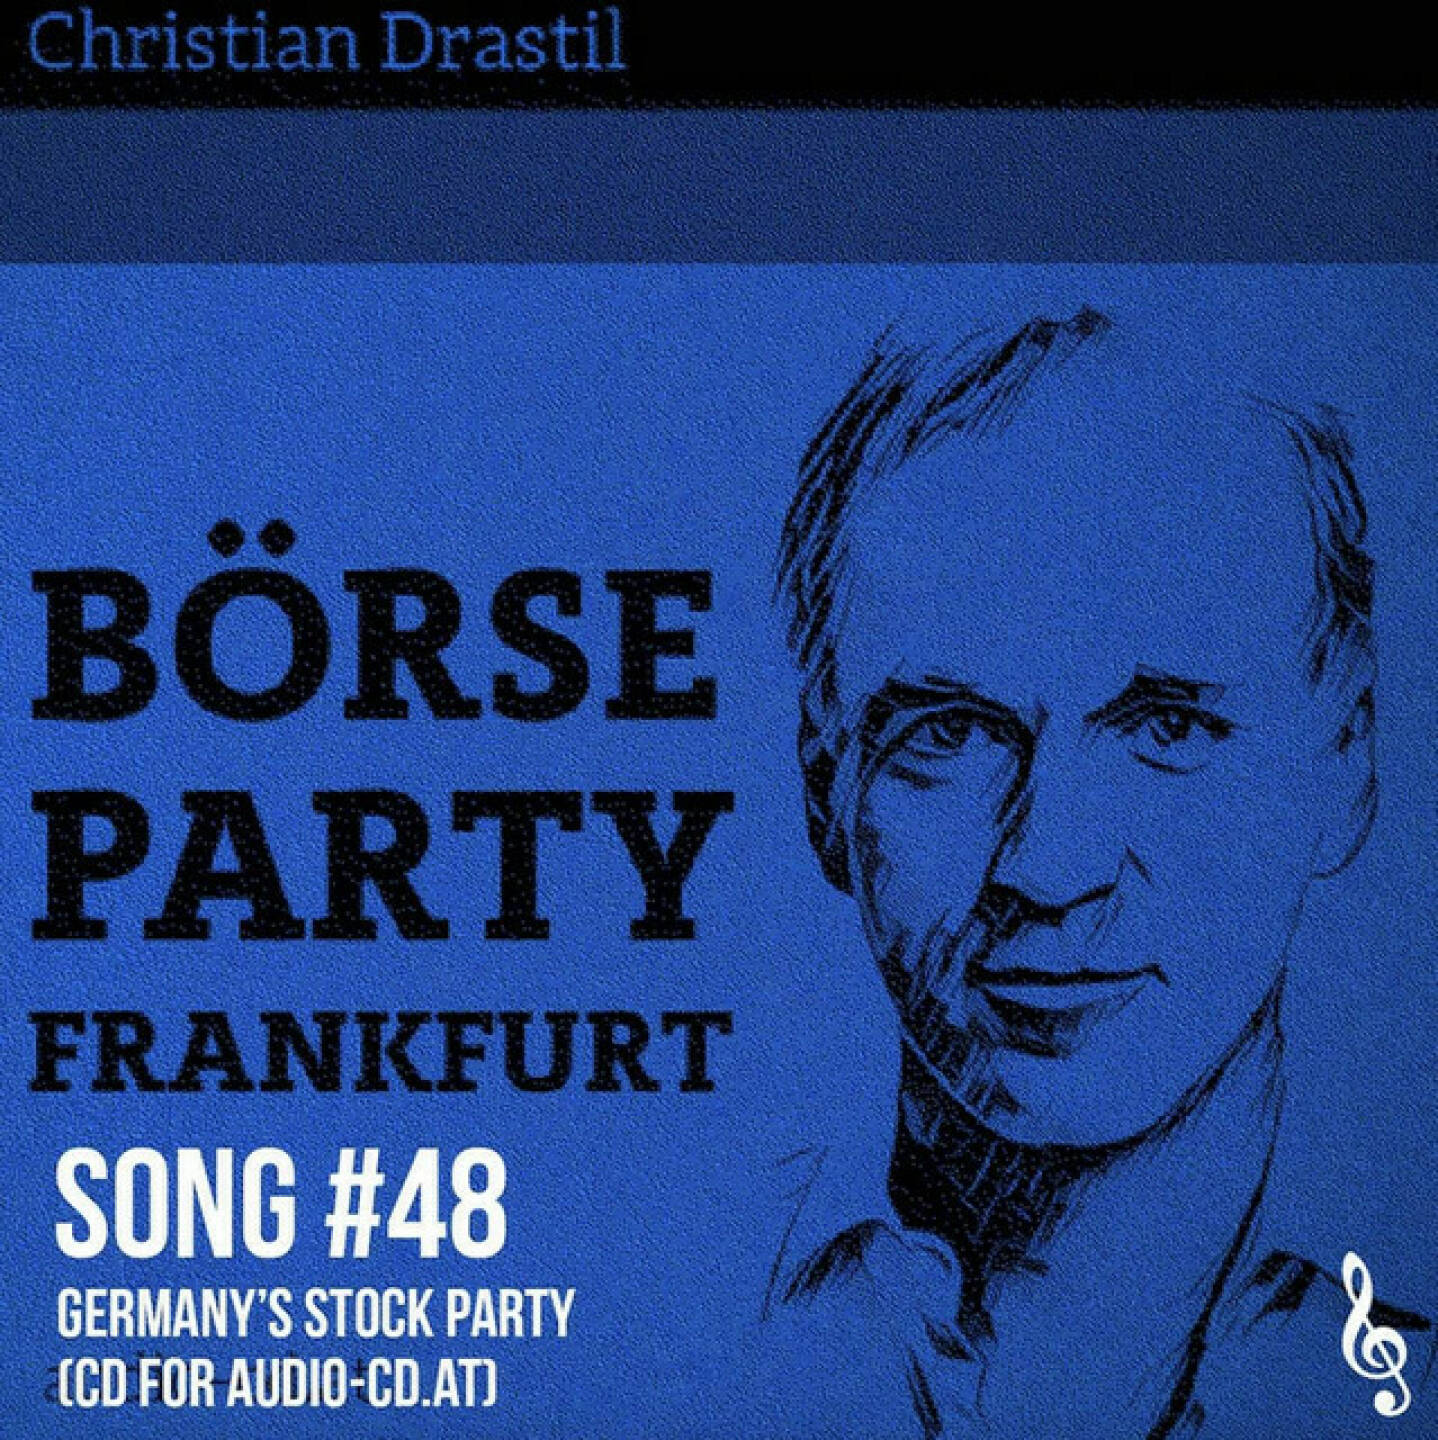 https://open.spotify.com/episode/1tRUgbl2kuT3QbbEdPmCu4
Song #48: Germany´s Stock Party 2024 (CD for audio-cd.at) - <p>Mit heute benenne ich den &#34;Wiener Börse Plausch&#34; auf &#34;Wiener Börse Party&#34; um, Mitte Jänner startet mein DAX-Mittagsbericht im deutschen Börsenradio und auch im eigenen Podcast werde ich - zunächst unregelmässig - über die Börse in Frankfurt berichten. Dies unter &#34;Börse Party Frankfurt&#34;. Dazu habe ich eine schnelle Komposition gemacht, der Refrain ist der Jingle und die Langversion First Take hier zu hören. <br/><br/>Das waren unsere Weihnachtssongs:<br/><br/>- eine „Last Christian“-Version, die ich vor Weihnachen zwischen zwei Podcast-Terminen im Studio eingespielt und geträllert habe.<br/><br/><a href=https://open.spotify.com/episode/6ldFasL6rCiK2l5OOHyptL target=_blank>https://open.spotify.com/episode/6ldFasL6rCiK2l5OOHyptL</a> <br/><br/>- Today it ist Christmas (Marek/Drastil): <a href=https://audio-cd.at/page/podcast/3674 target=_blank>https://audio-cd.at/page/podcast/3674</a><br/><br/>- Christmas Time Forever (Drastil/Marek(: <a href=https://audio-cd.at/page/podcast/3642 target=_blank>https://audio-cd.at/page/podcast/3642</a><br/><br/>- Börse Band Aid (feat. Klemens Eiter, Bettina Zeman, Christine Helmel, Sebastian Leben, CD &amp; Kids) <a href=https://audio-cd.at/page/podcast/3738/ target=_blank>https://audio-cd.at/page/podcast/3738/</a><br/><br/>- Mehr Songs: <a href=https://www.audio-cd.at/songs target=_blank>https://www.audio-cd.at/songs</a> <br/><br/>- Playlist mit ein paar unserer Songs: <a href=https://open.spotify.com/playlist/63tRnVh3aIOlhrdUKvb4P target=_blank>https://open.spotify.com/playlist/63tRnVh3aIOlhrdUKvb4P</a><br/><br/>Bewertungen bei Apple (oder auch Spotify) machen mir Freude: <a href=https://podcasts.apple.com/at/podcast/audio-cd-at-indie-podcasts-wiener-boerse-sport-musik-und-mehr/id1484919130 target=_blank>https://podcasts.apple.com/at/podcast/audio-cd-at-indie-podcasts-wiener-boerse-sport-musik-und-mehr/id1484919130</a> .</p>